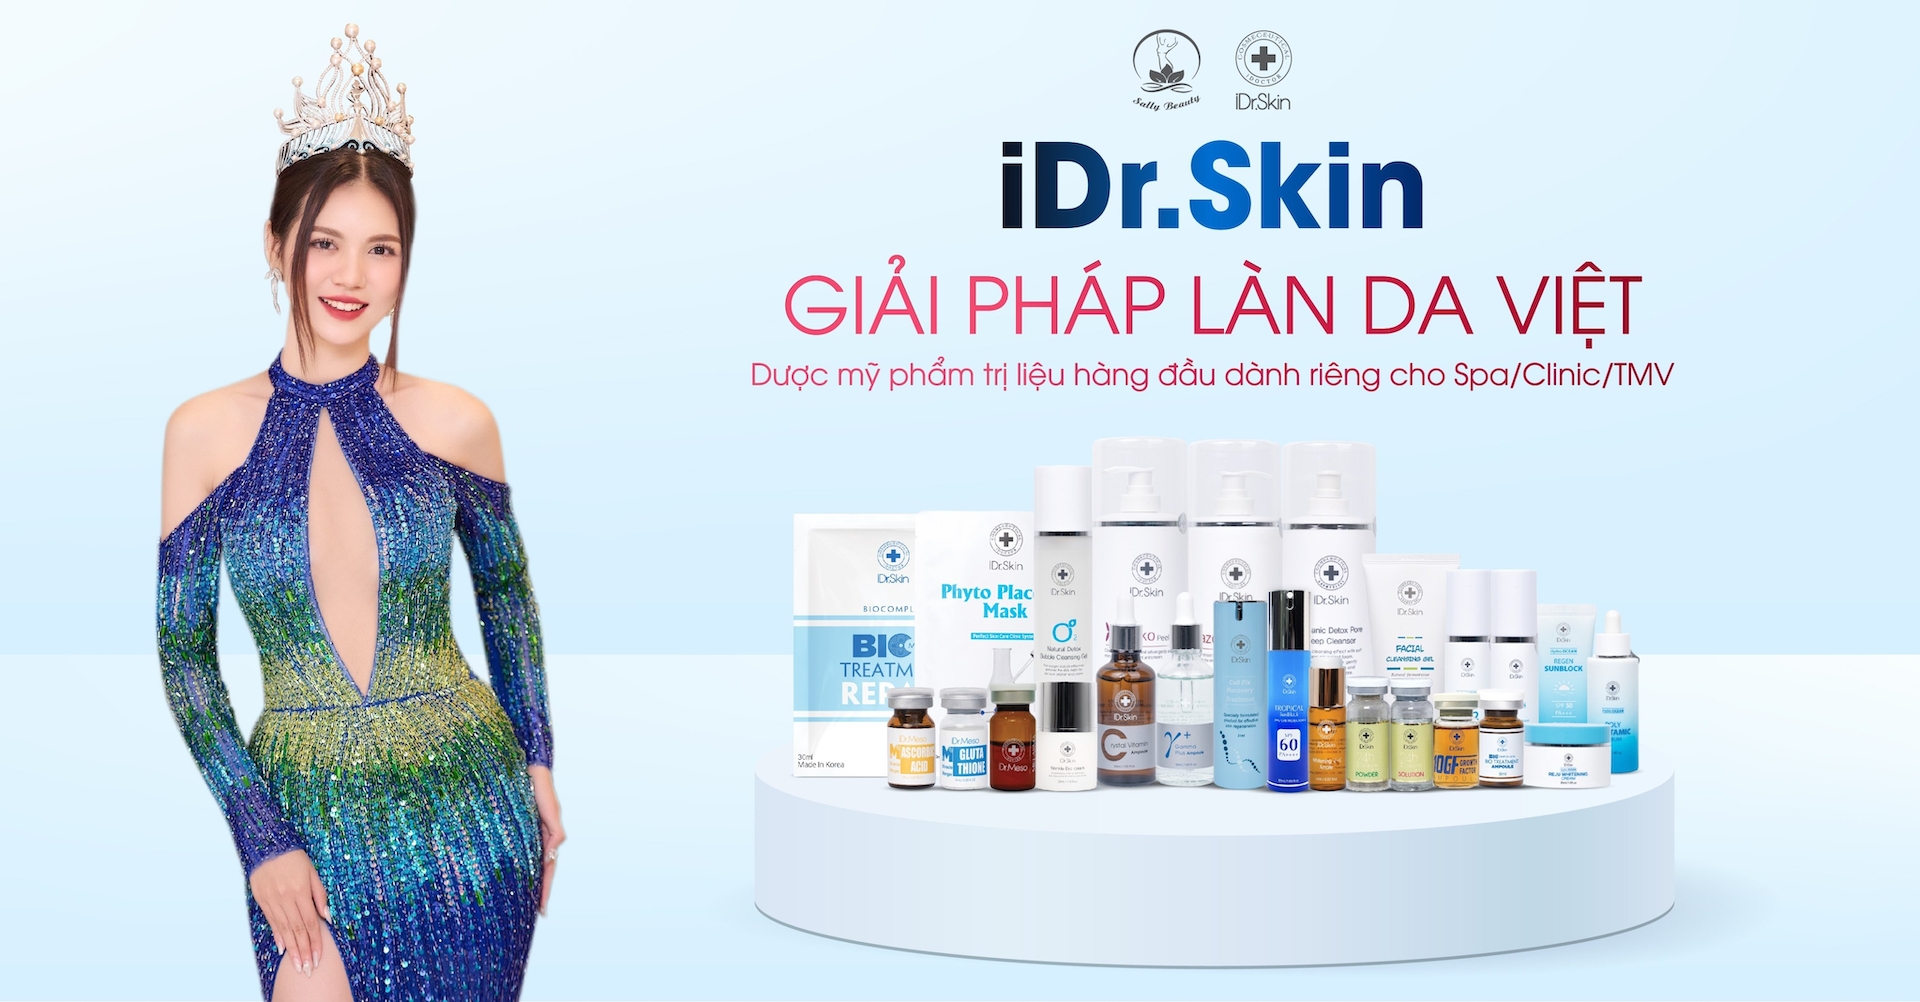 Thương hiệu iDr.Skin - dược mỹ phẩm công nghệ cao của Hàn Quốc - chính thức có mặt tại Perfect Skin R&D